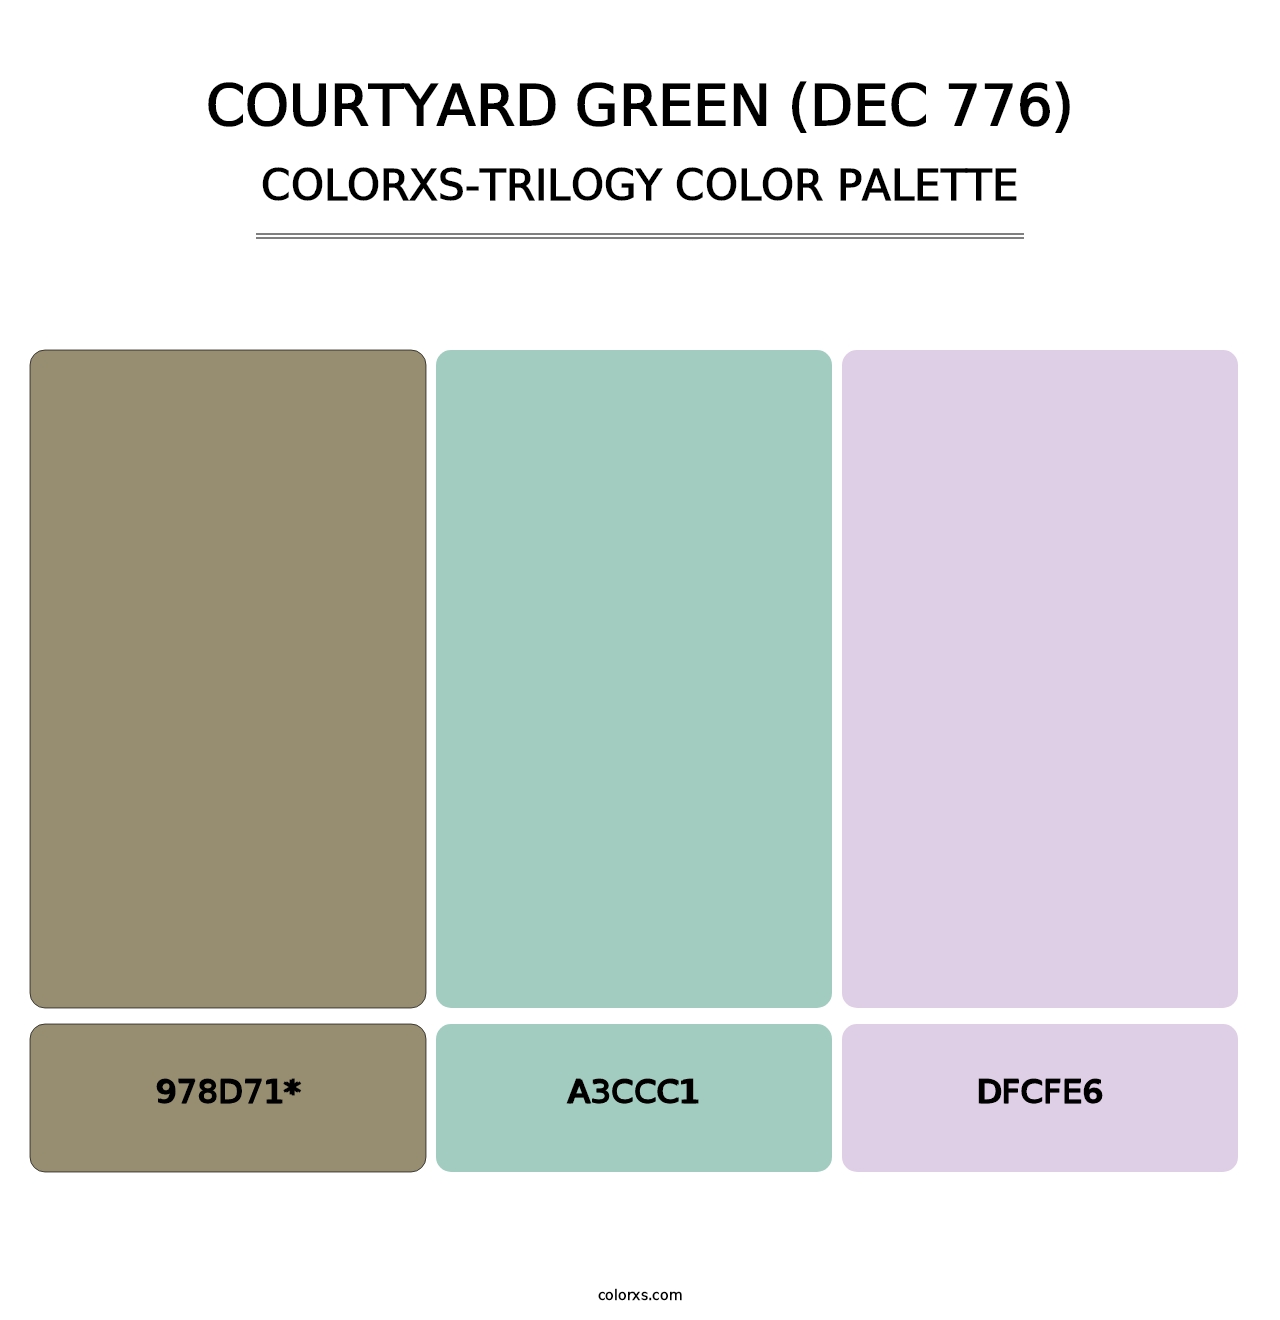 Courtyard Green (DEC 776) - Colorxs Trilogy Palette